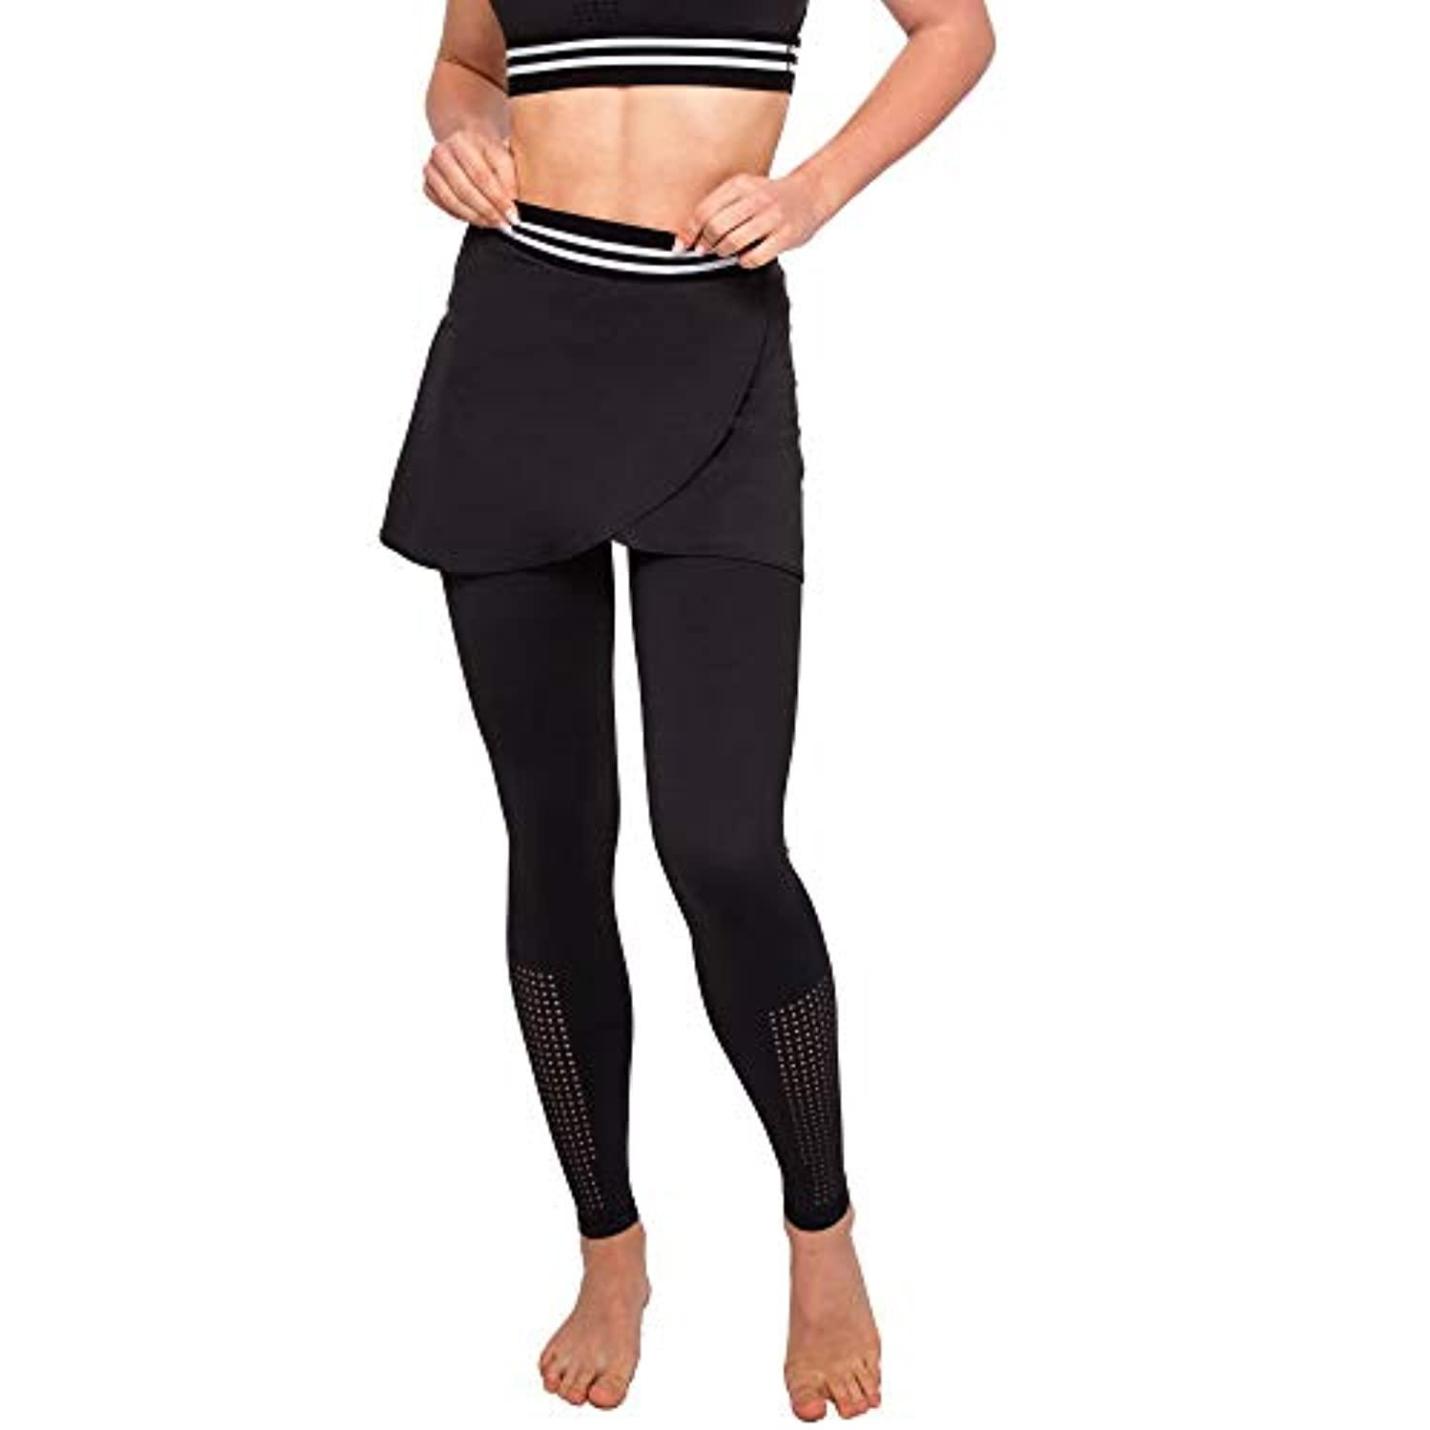 Dameslegging met rok - broek voor yoga, pilates, fitness, sport S